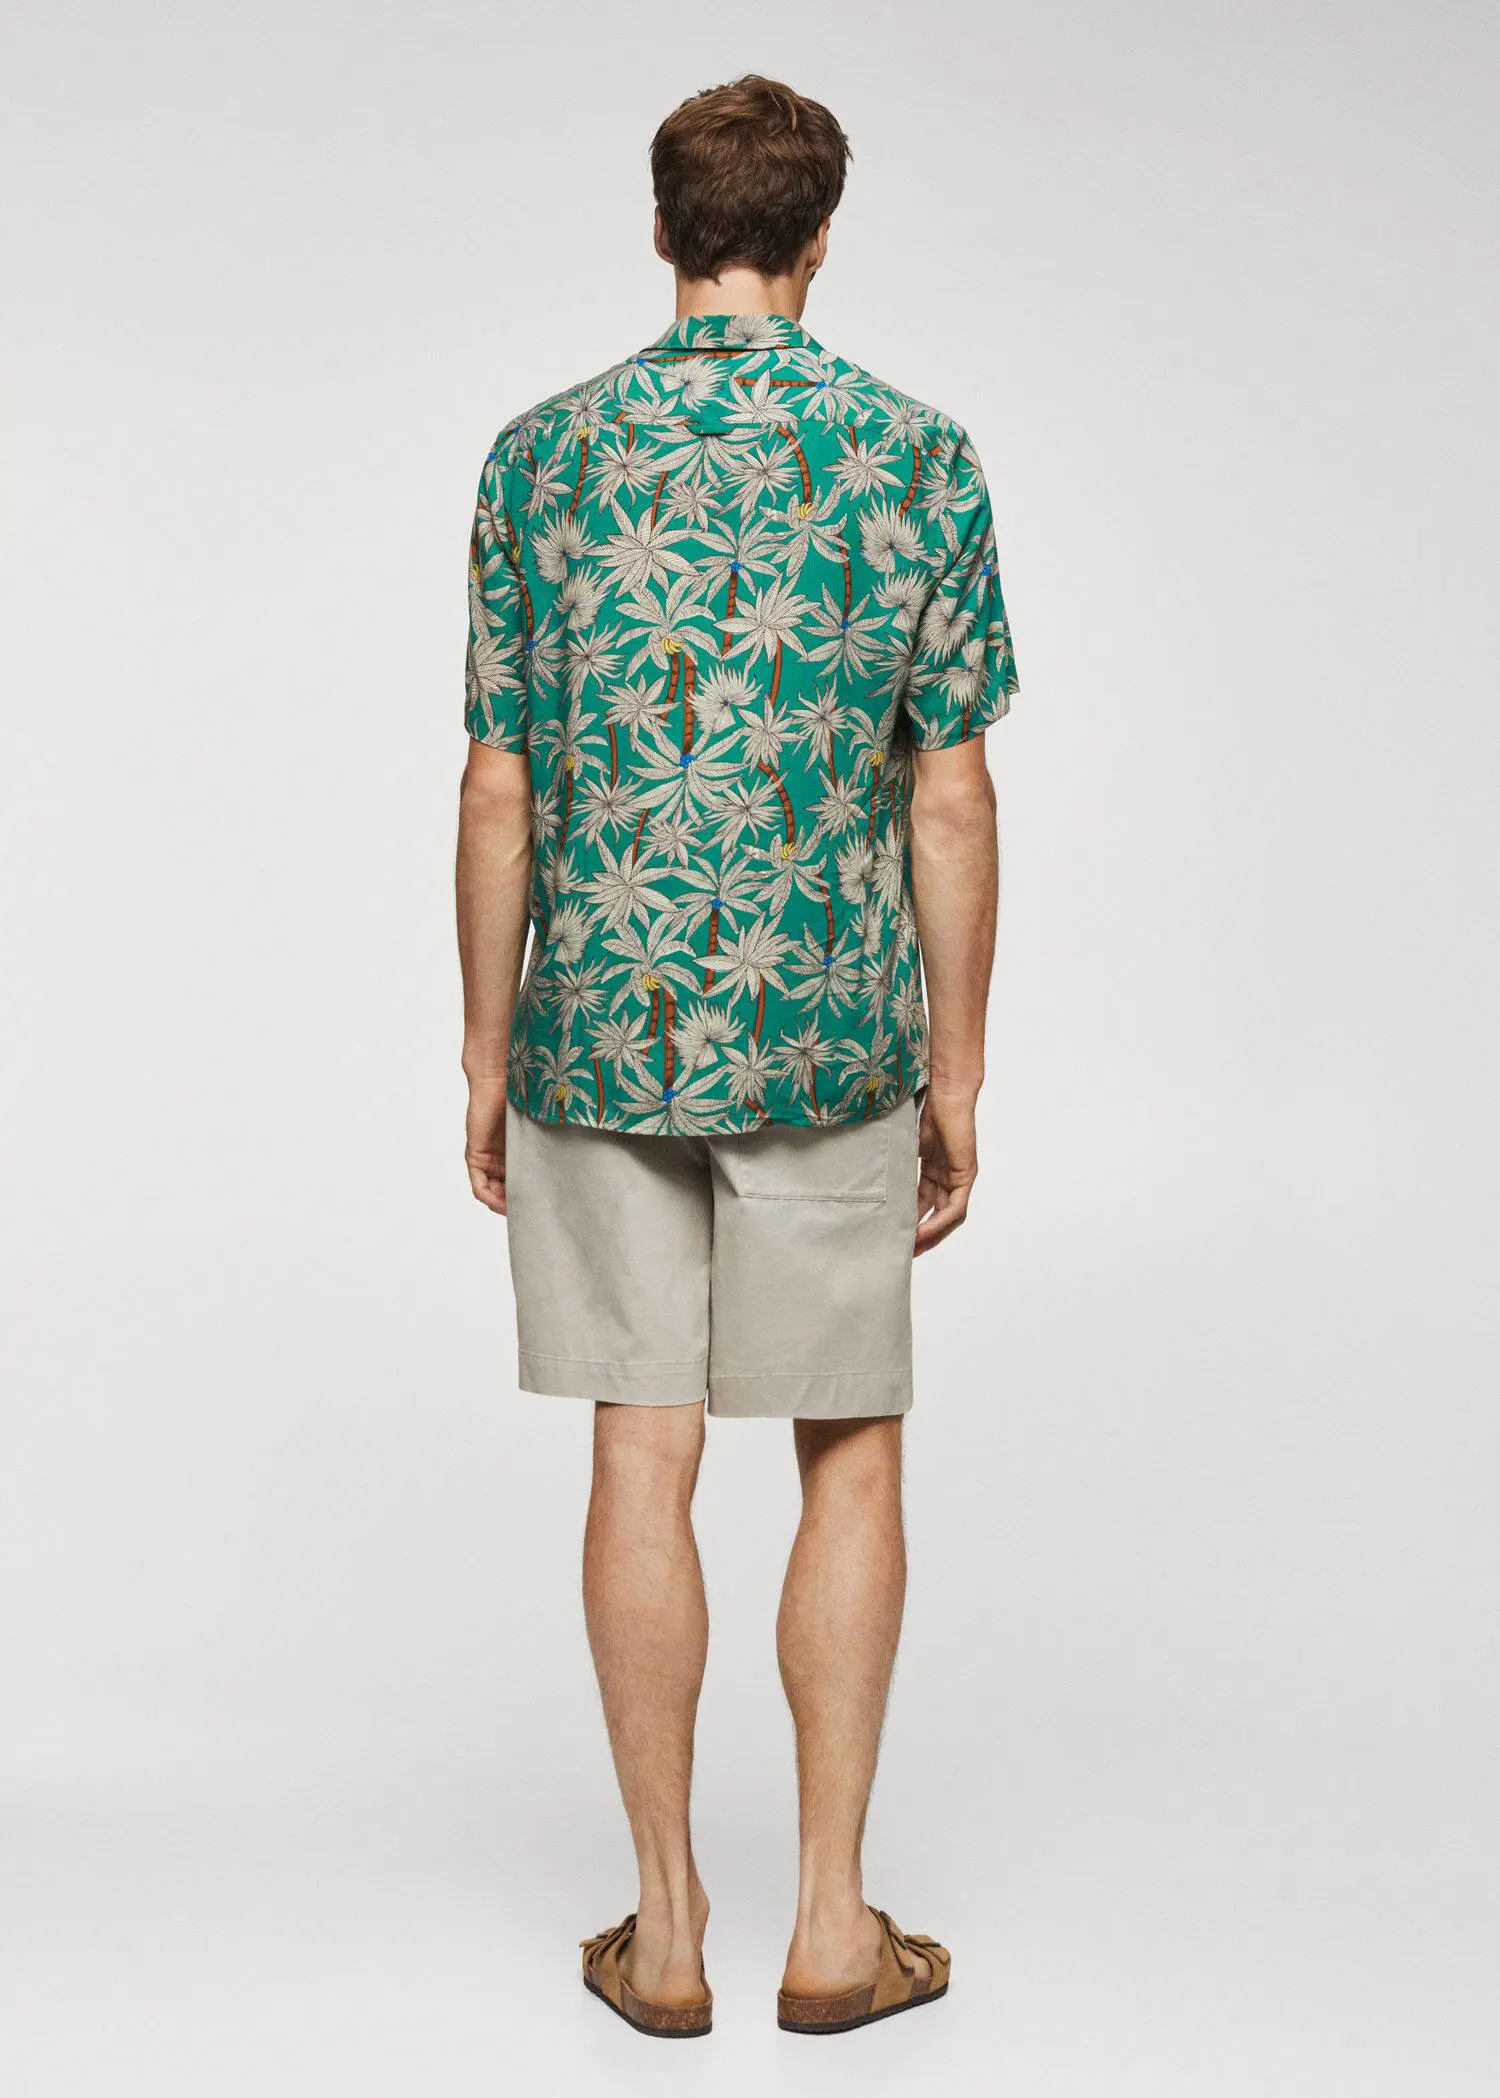 Mango Hawaiian print short sleeve shirt. 3